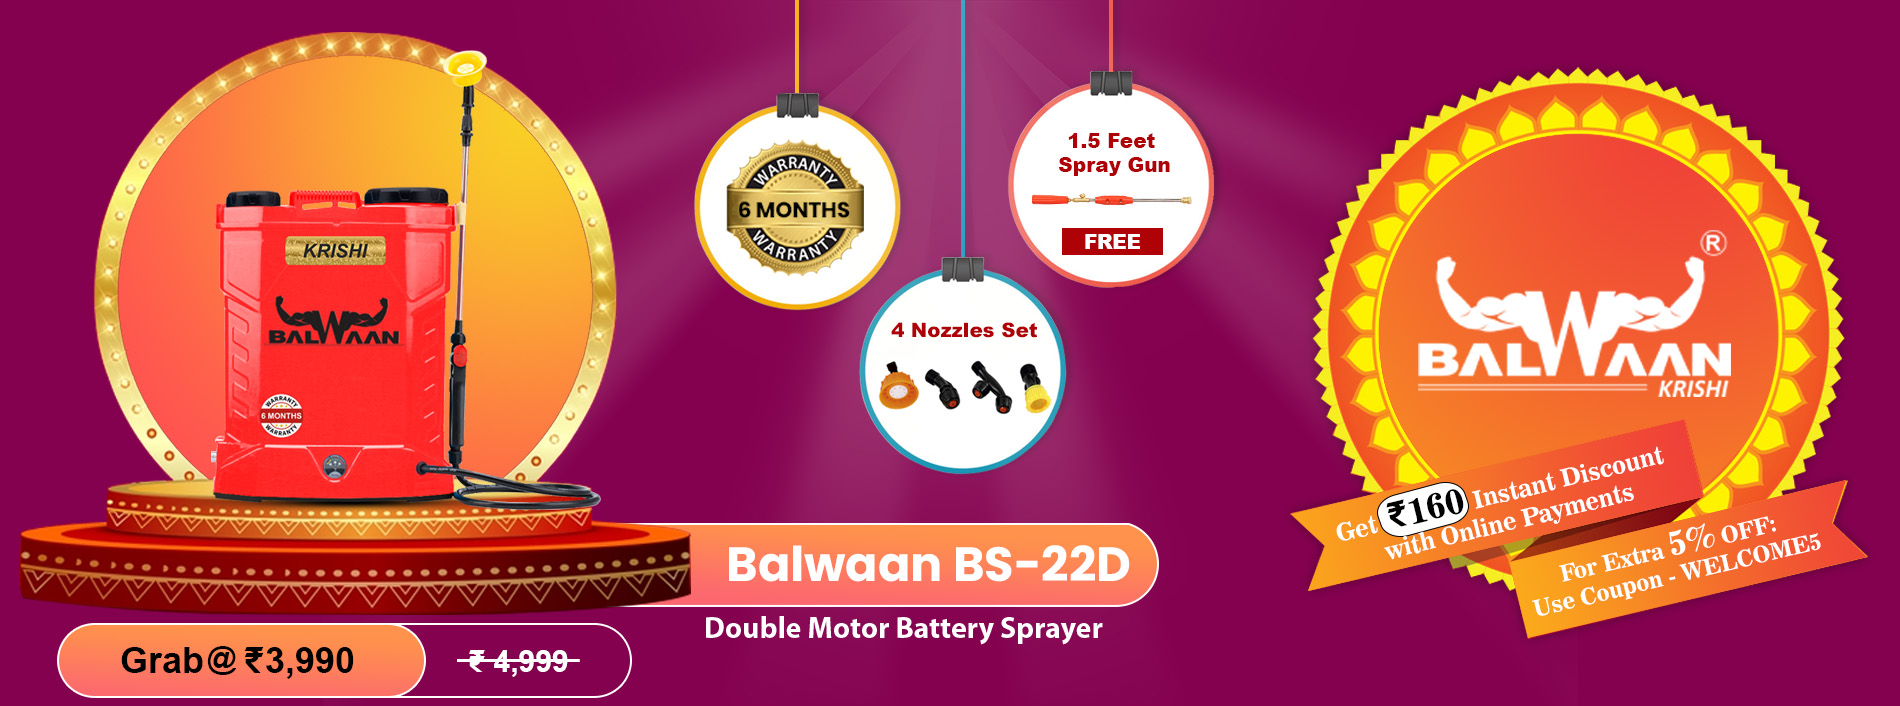 Balwaan_battery-sprayer_BS-22D